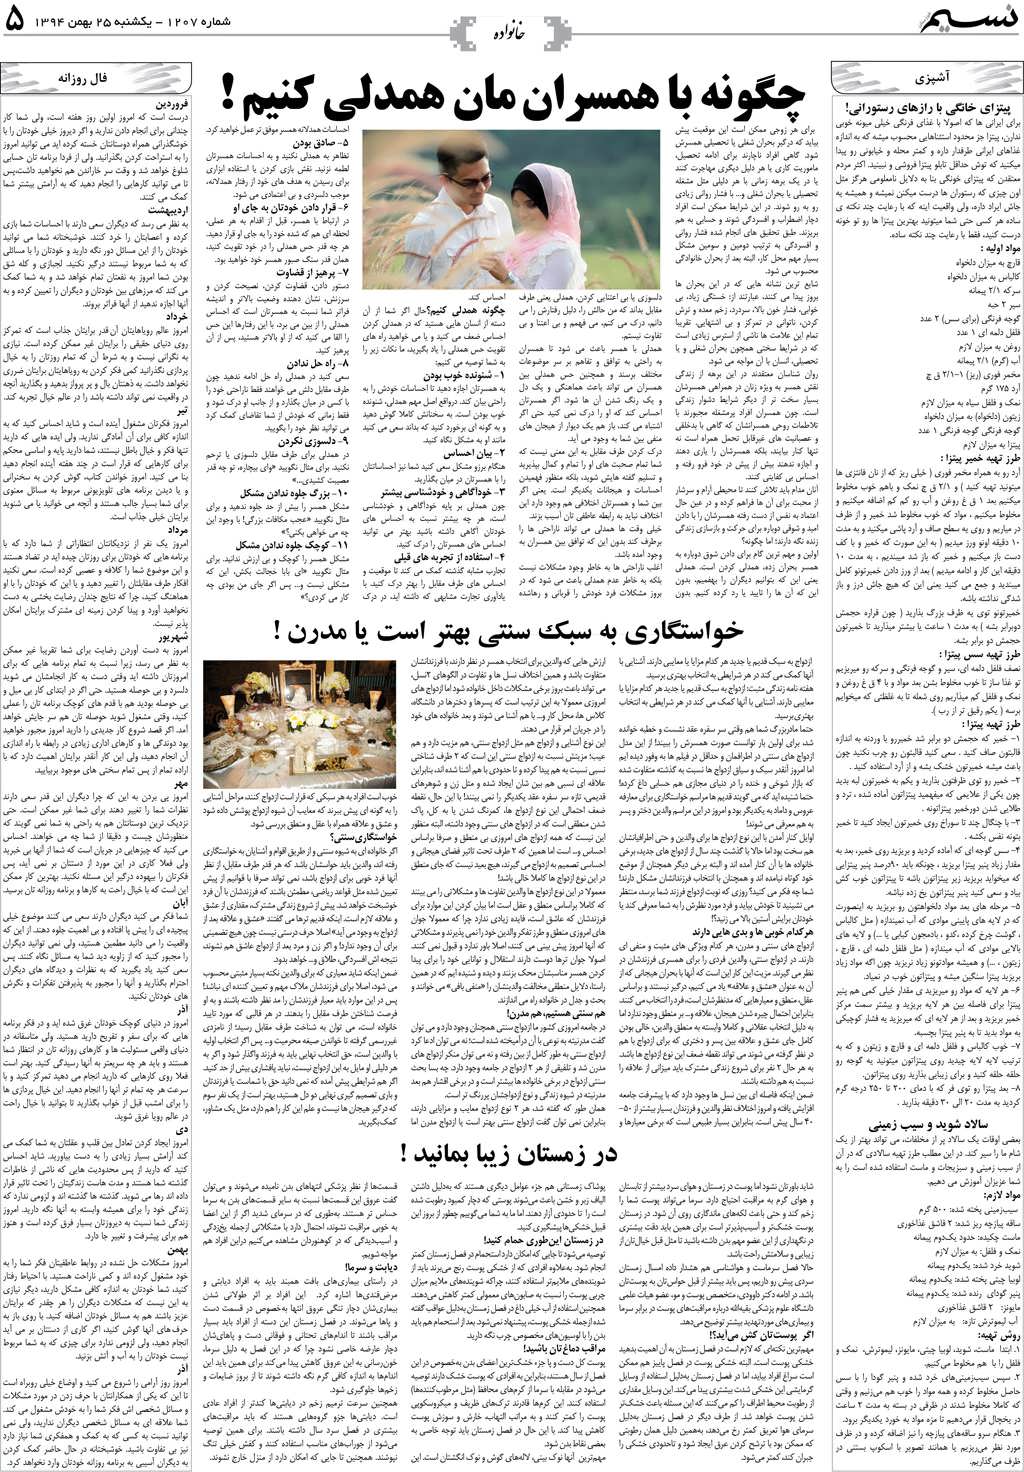 صفحه خانواده روزنامه نسیم شماره 1207